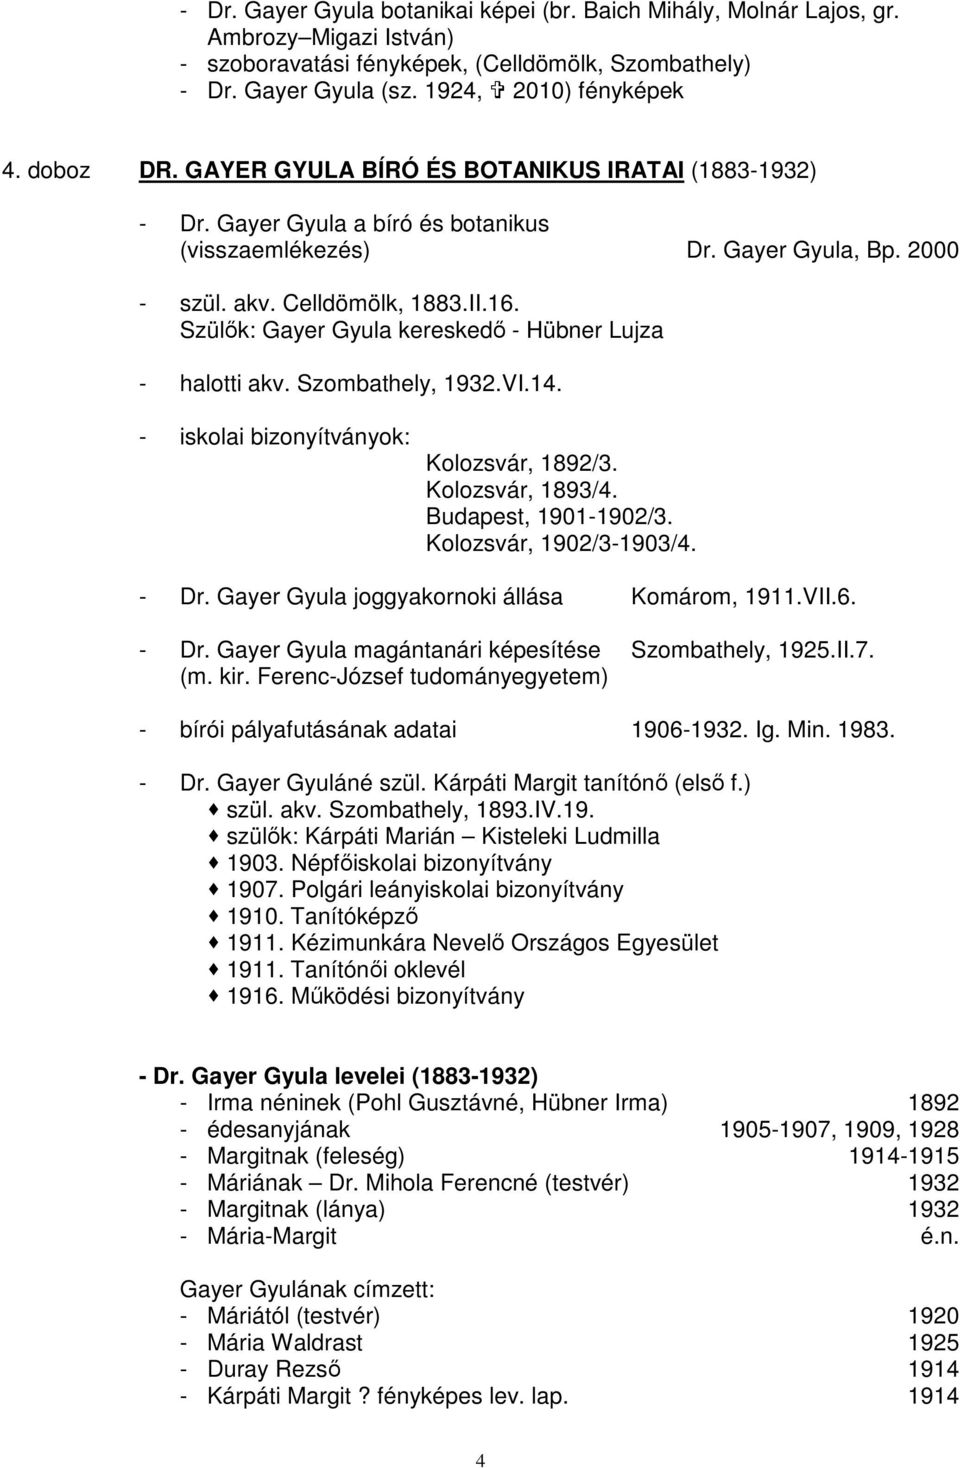 Szülık: Gayer Gyula kereskedı - Hübner Lujza - halotti akv. Szombathely, 1932.VI.14. - iskolai bizonyítványok: Kolozsvár, 1892/3. Kolozsvár, 1893/4. Budapest, 1901-1902/3. Kolozsvár, 1902/3-1903/4.